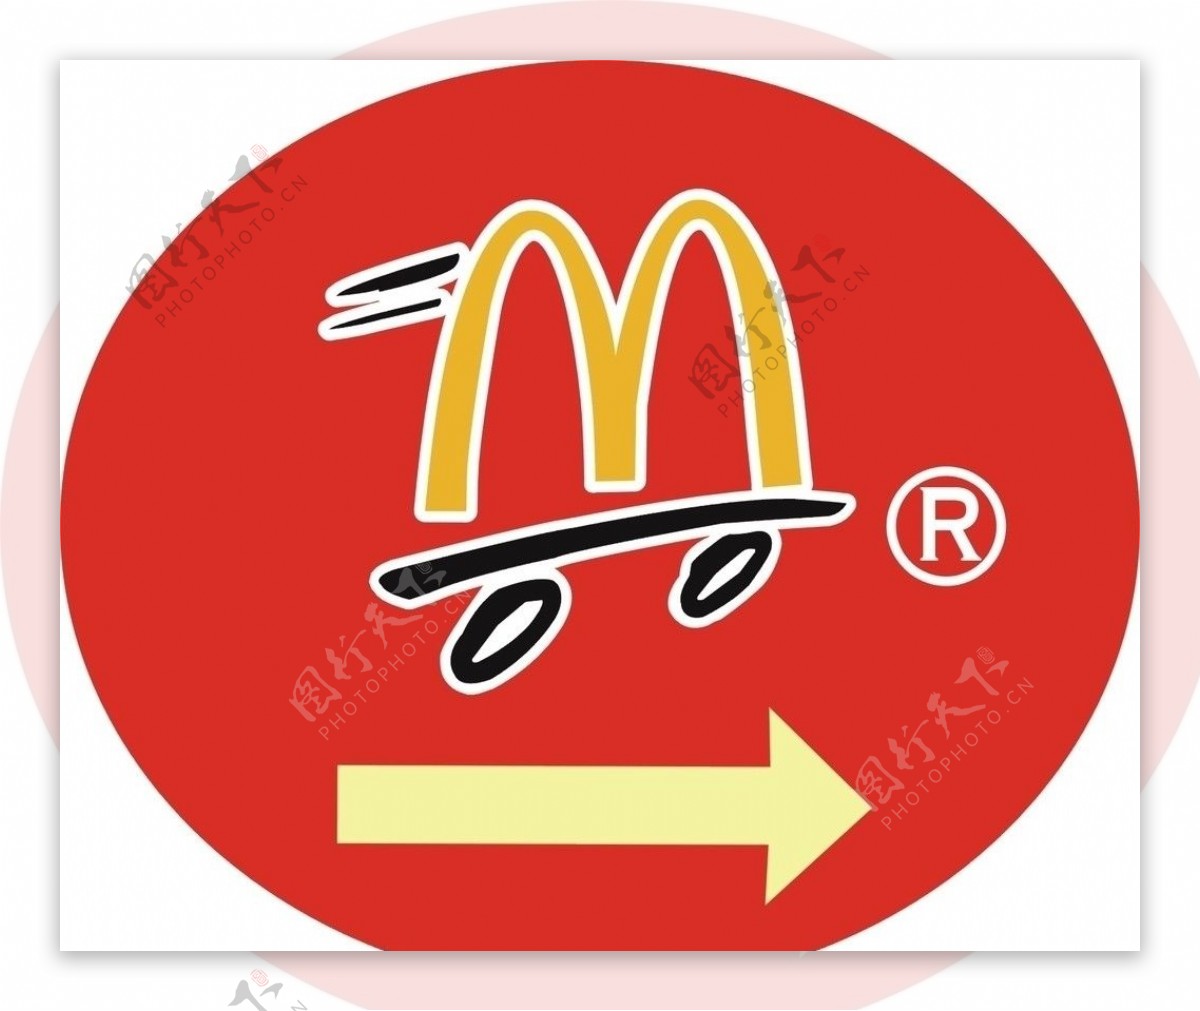 壁纸 : 麦当劳, 商标, 快餐连锁店 4800x3000 - wallpaperUp - 687417 - 电脑桌面壁纸 ...